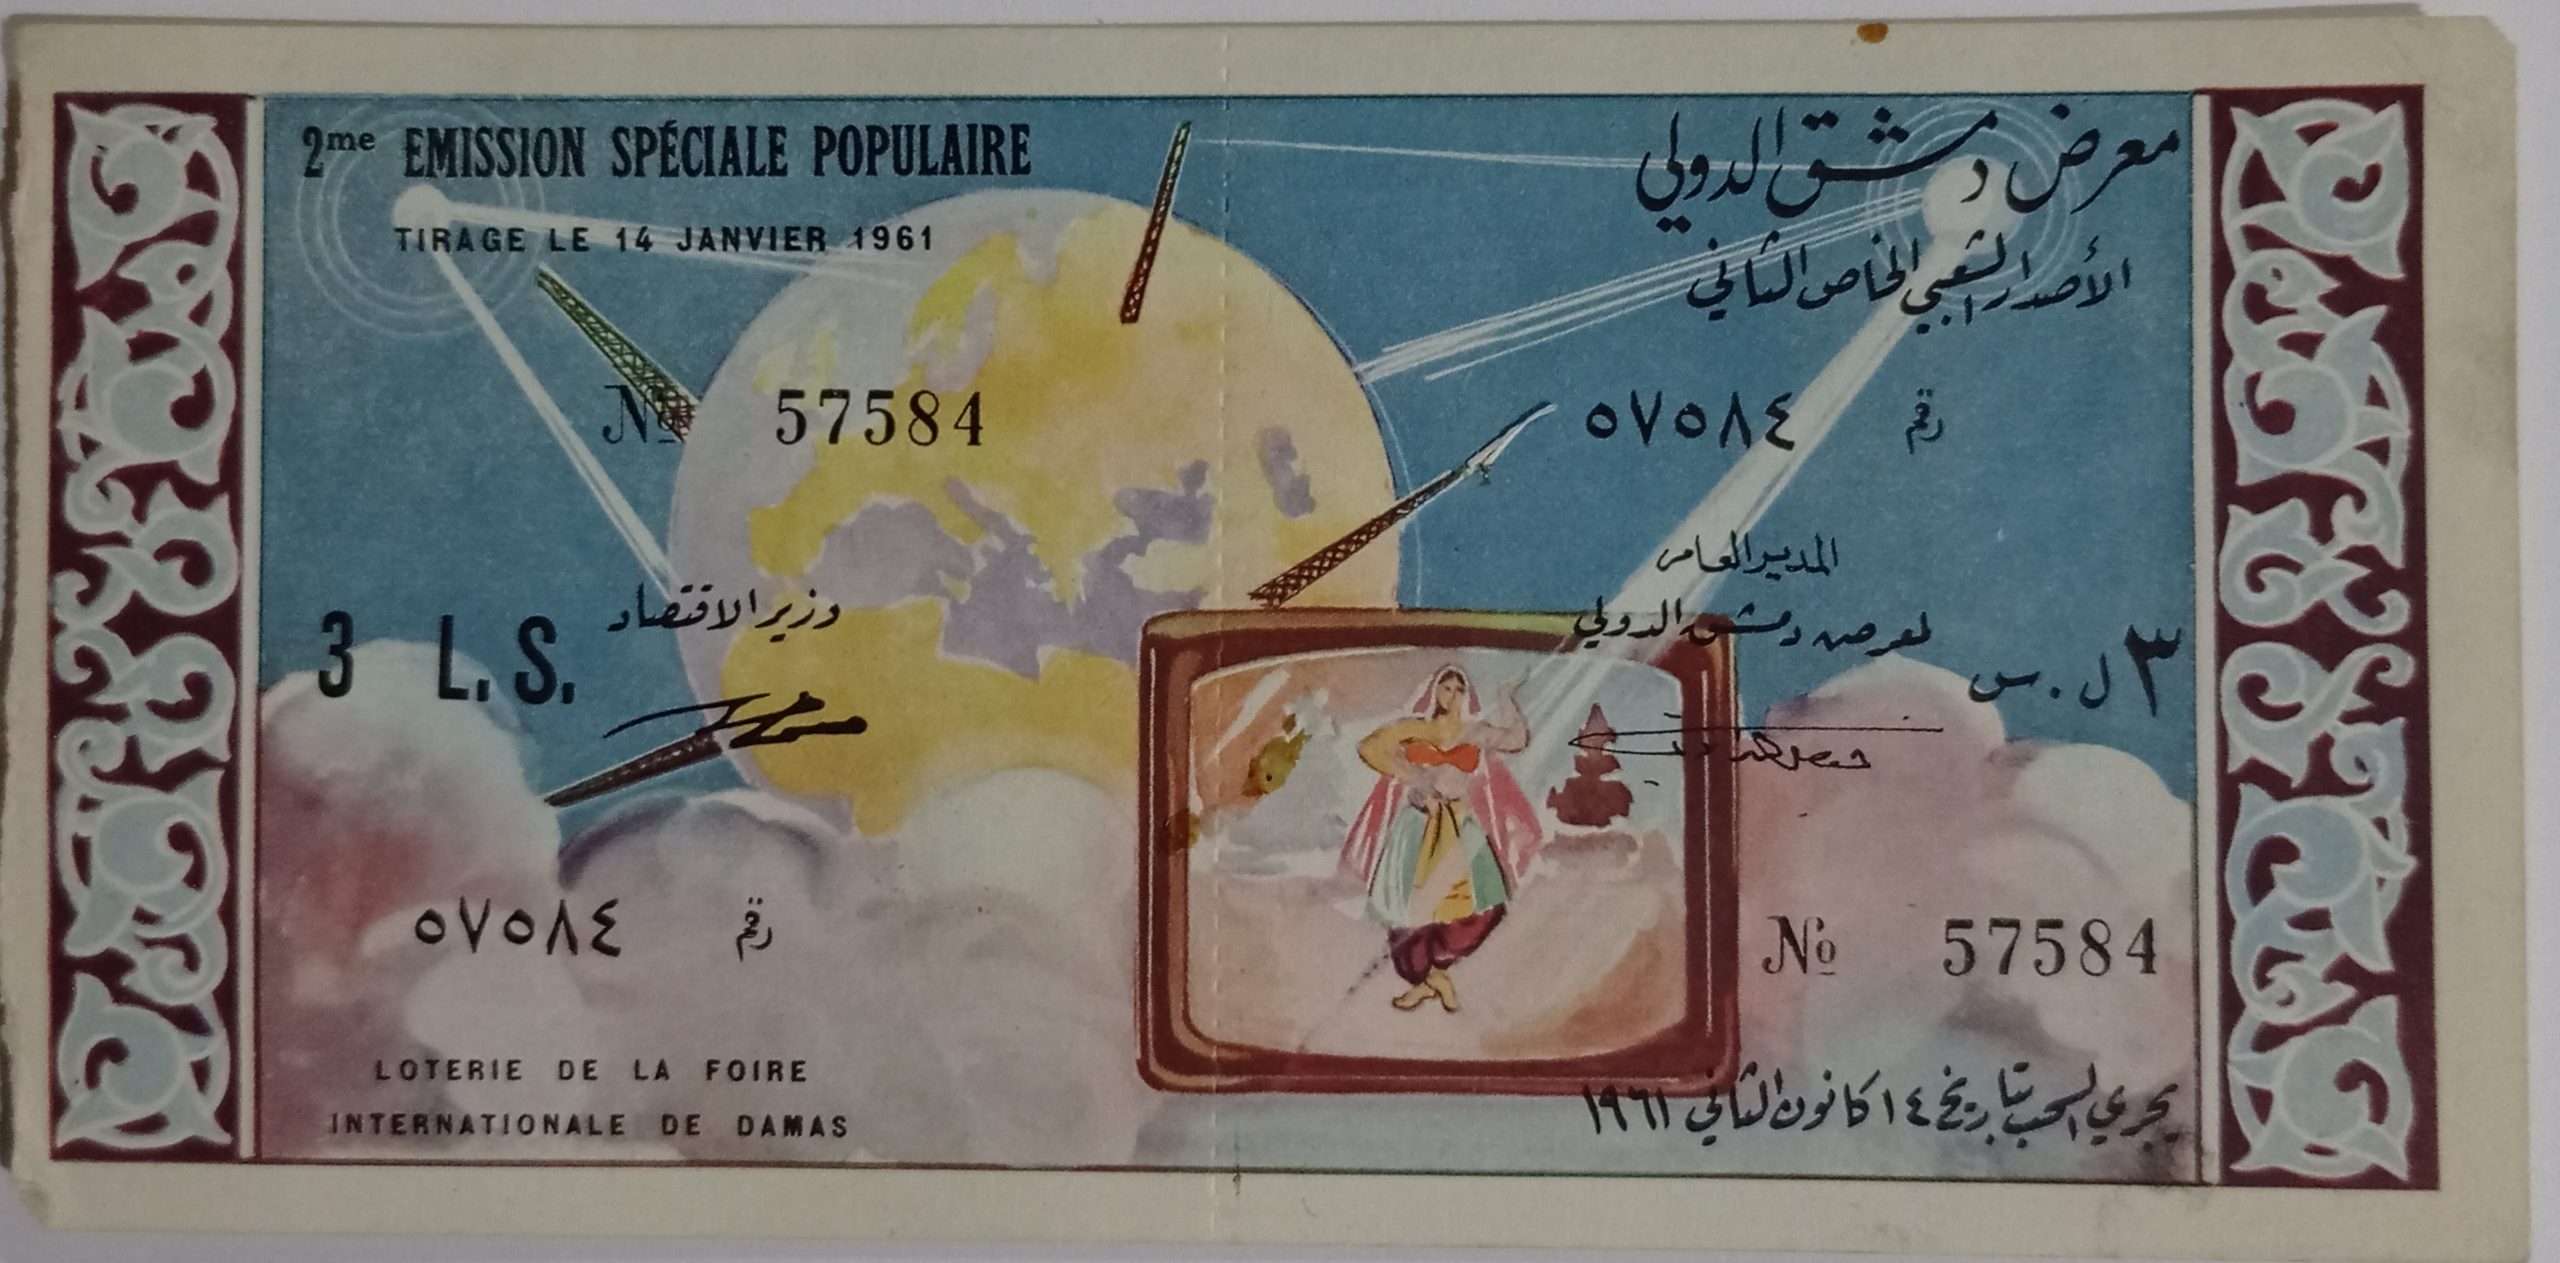 التاريخ السوري المعاصر - يانصيب معرض دمشق الدولي - الإصدار الشعبي الخاص الثاني عام 1960